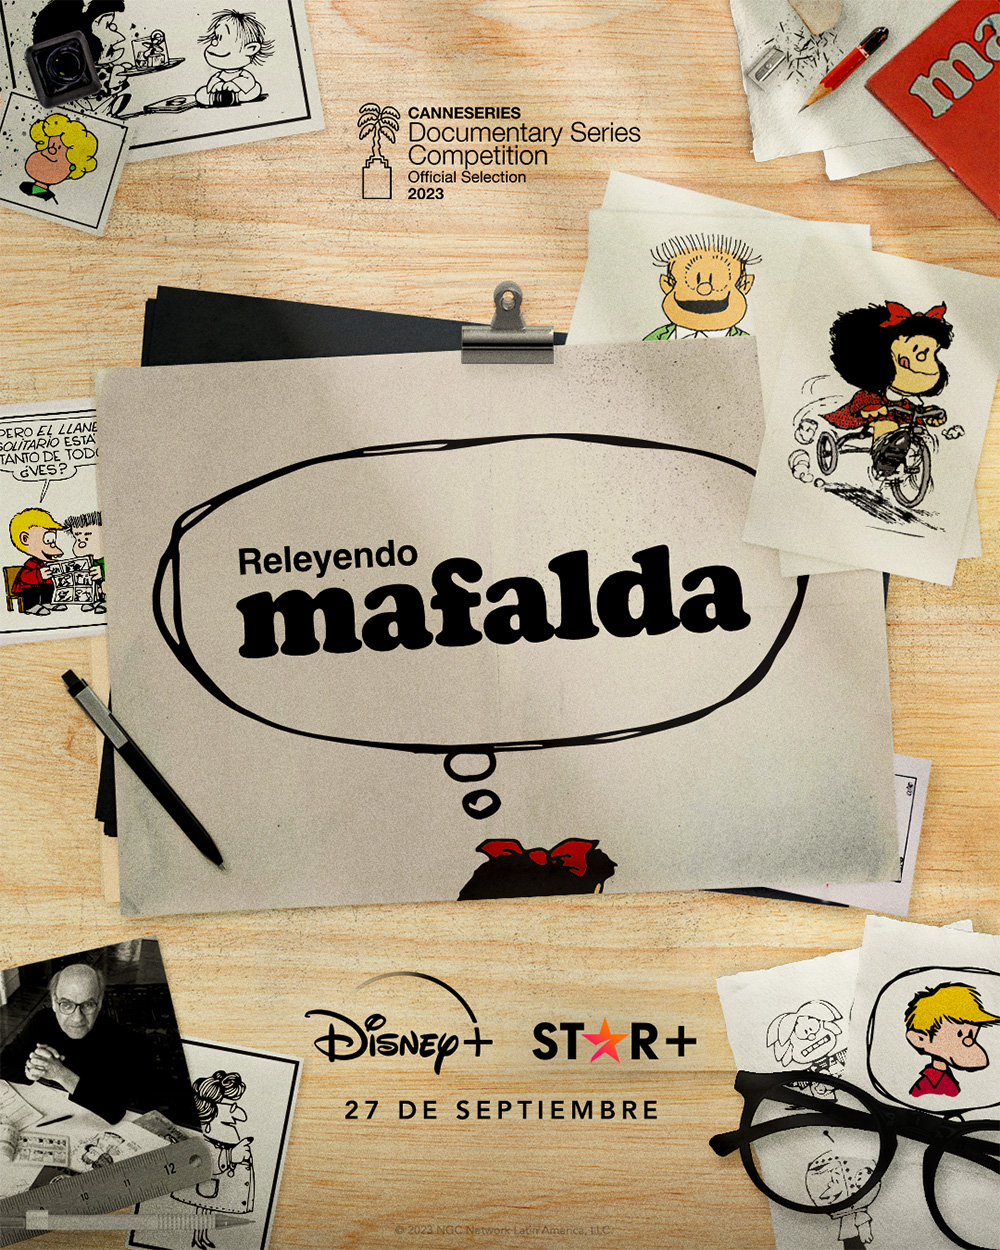 La nueva serie documental “Releyendo: Mafalda” estrenará en Disney+ y Star+ el 27 de Septiembre